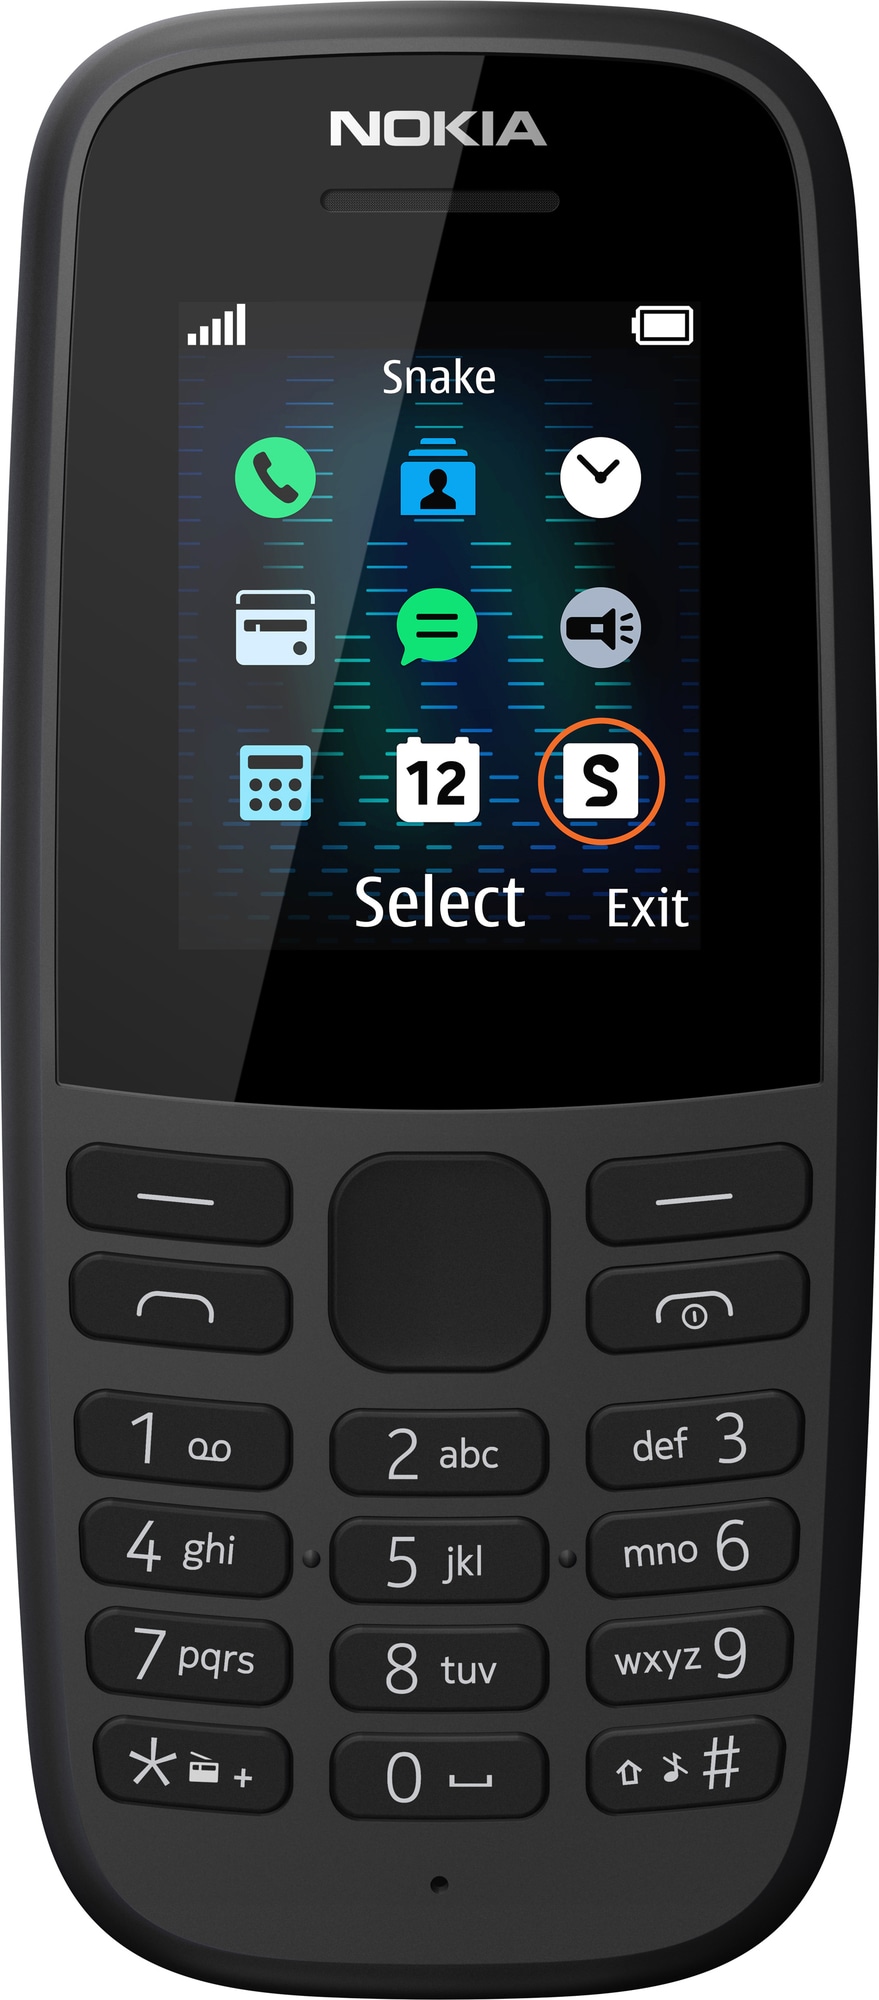 Nokia 105 matkapuhelin (musta) - Vain 2G - Gigantti verkkokauppa